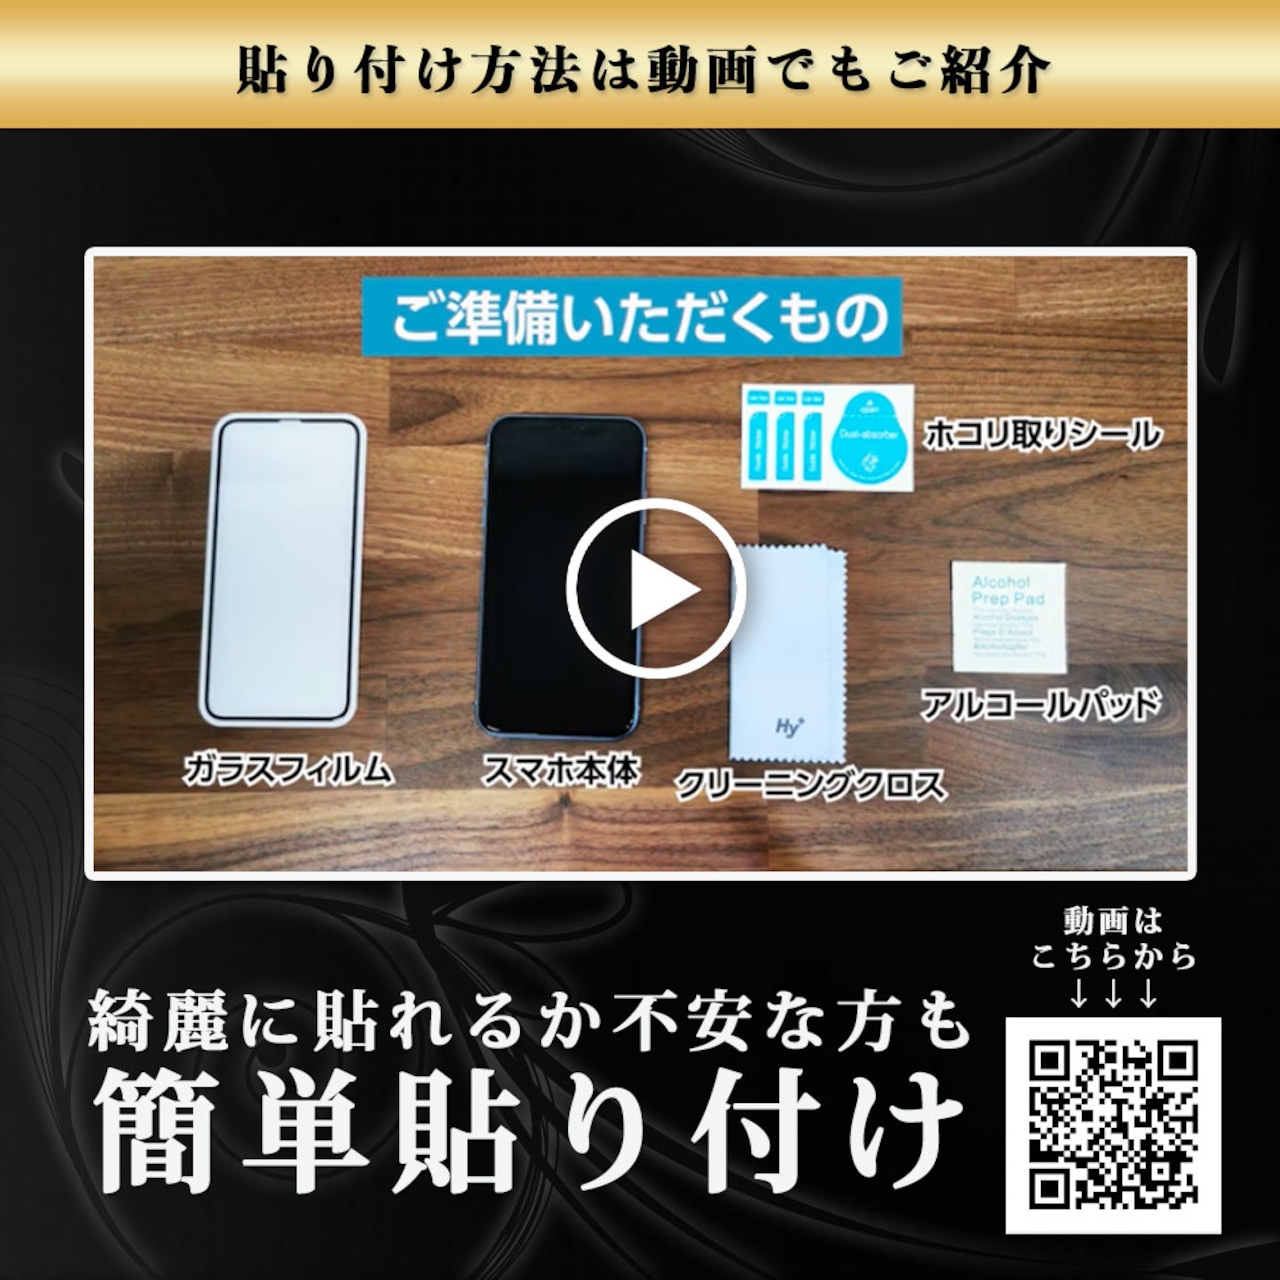 Hy+ iPhone11 Pro iPhone X iPhone Xs W硬化製法 ガラスフィルム 一般ガラスの3倍強度 全面保護 全面吸着 日本産ガラス使用 厚み0.33mm ブラック